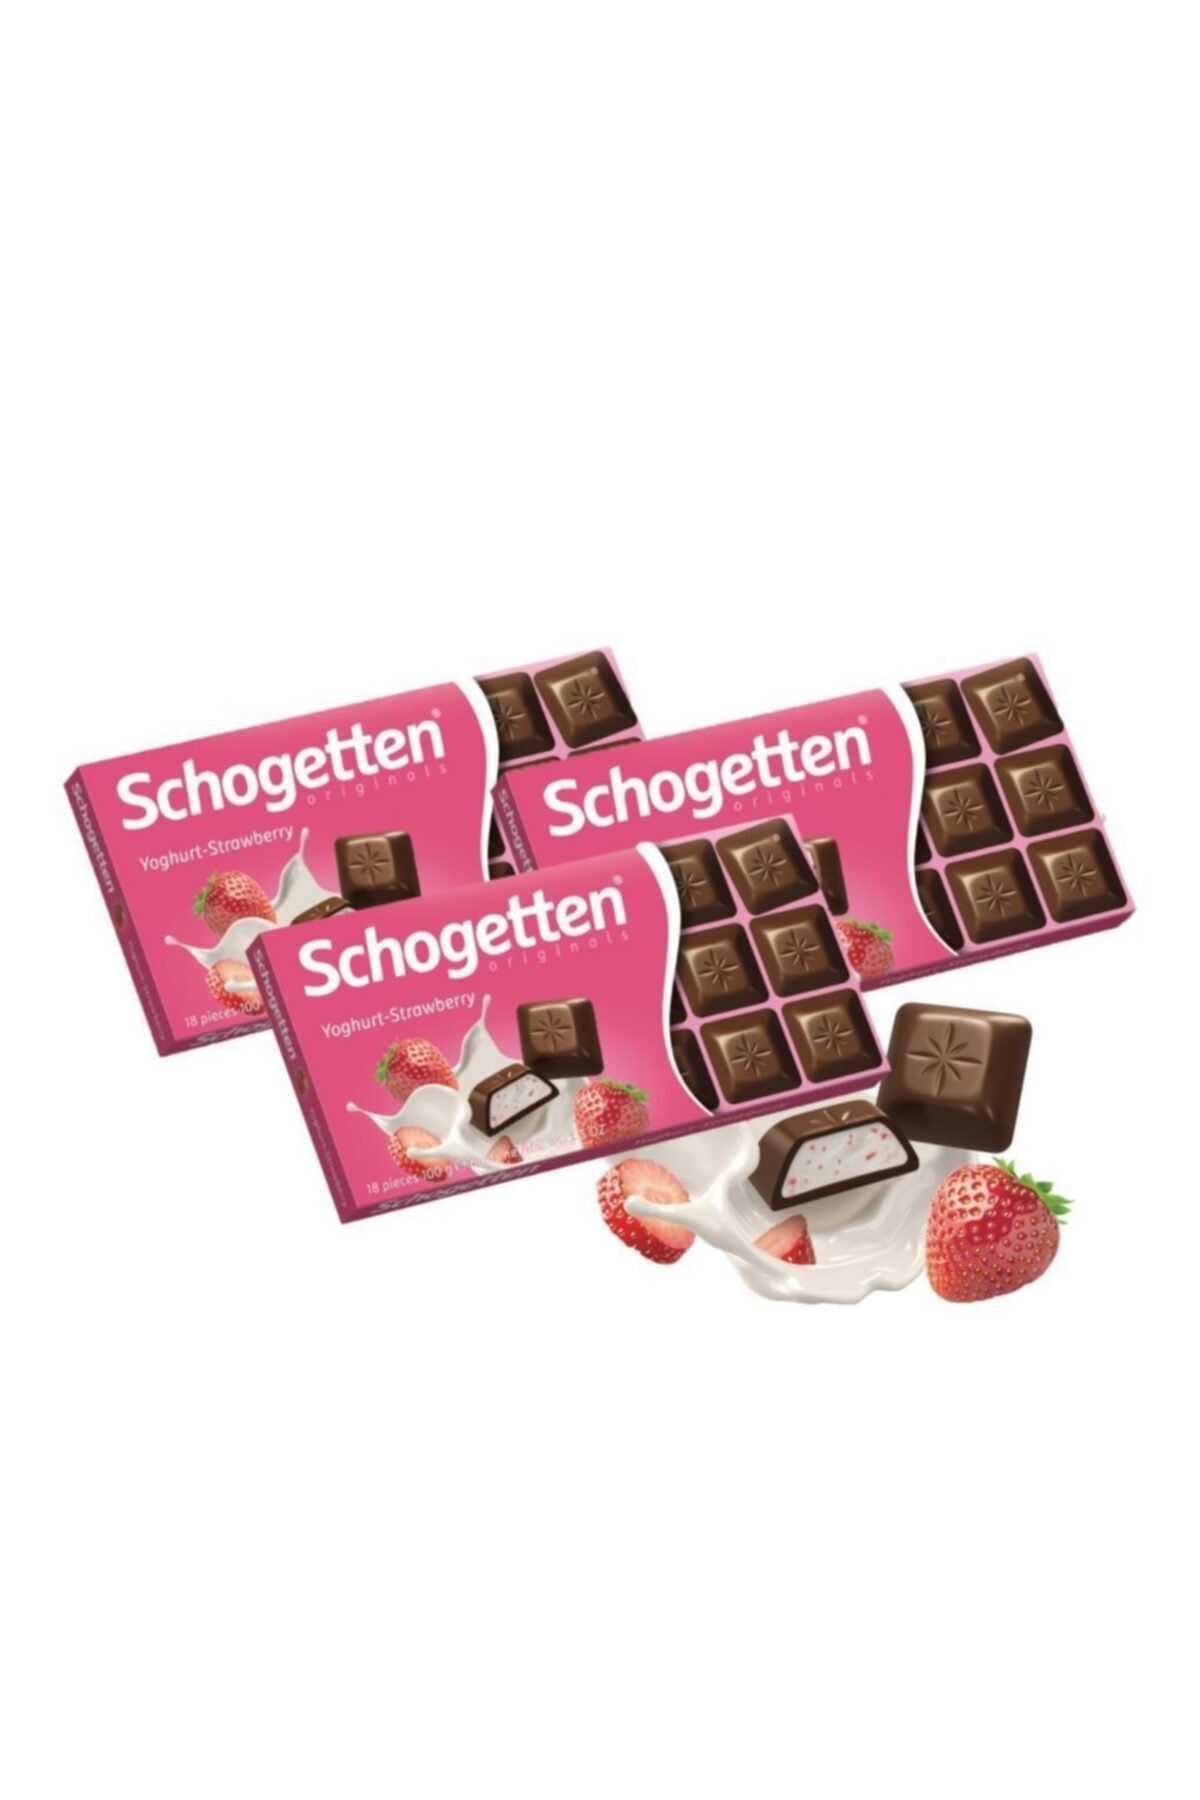 Schogetten Çilekli Yoğurtlu Çikolata 100 Gr. - 3 Adet